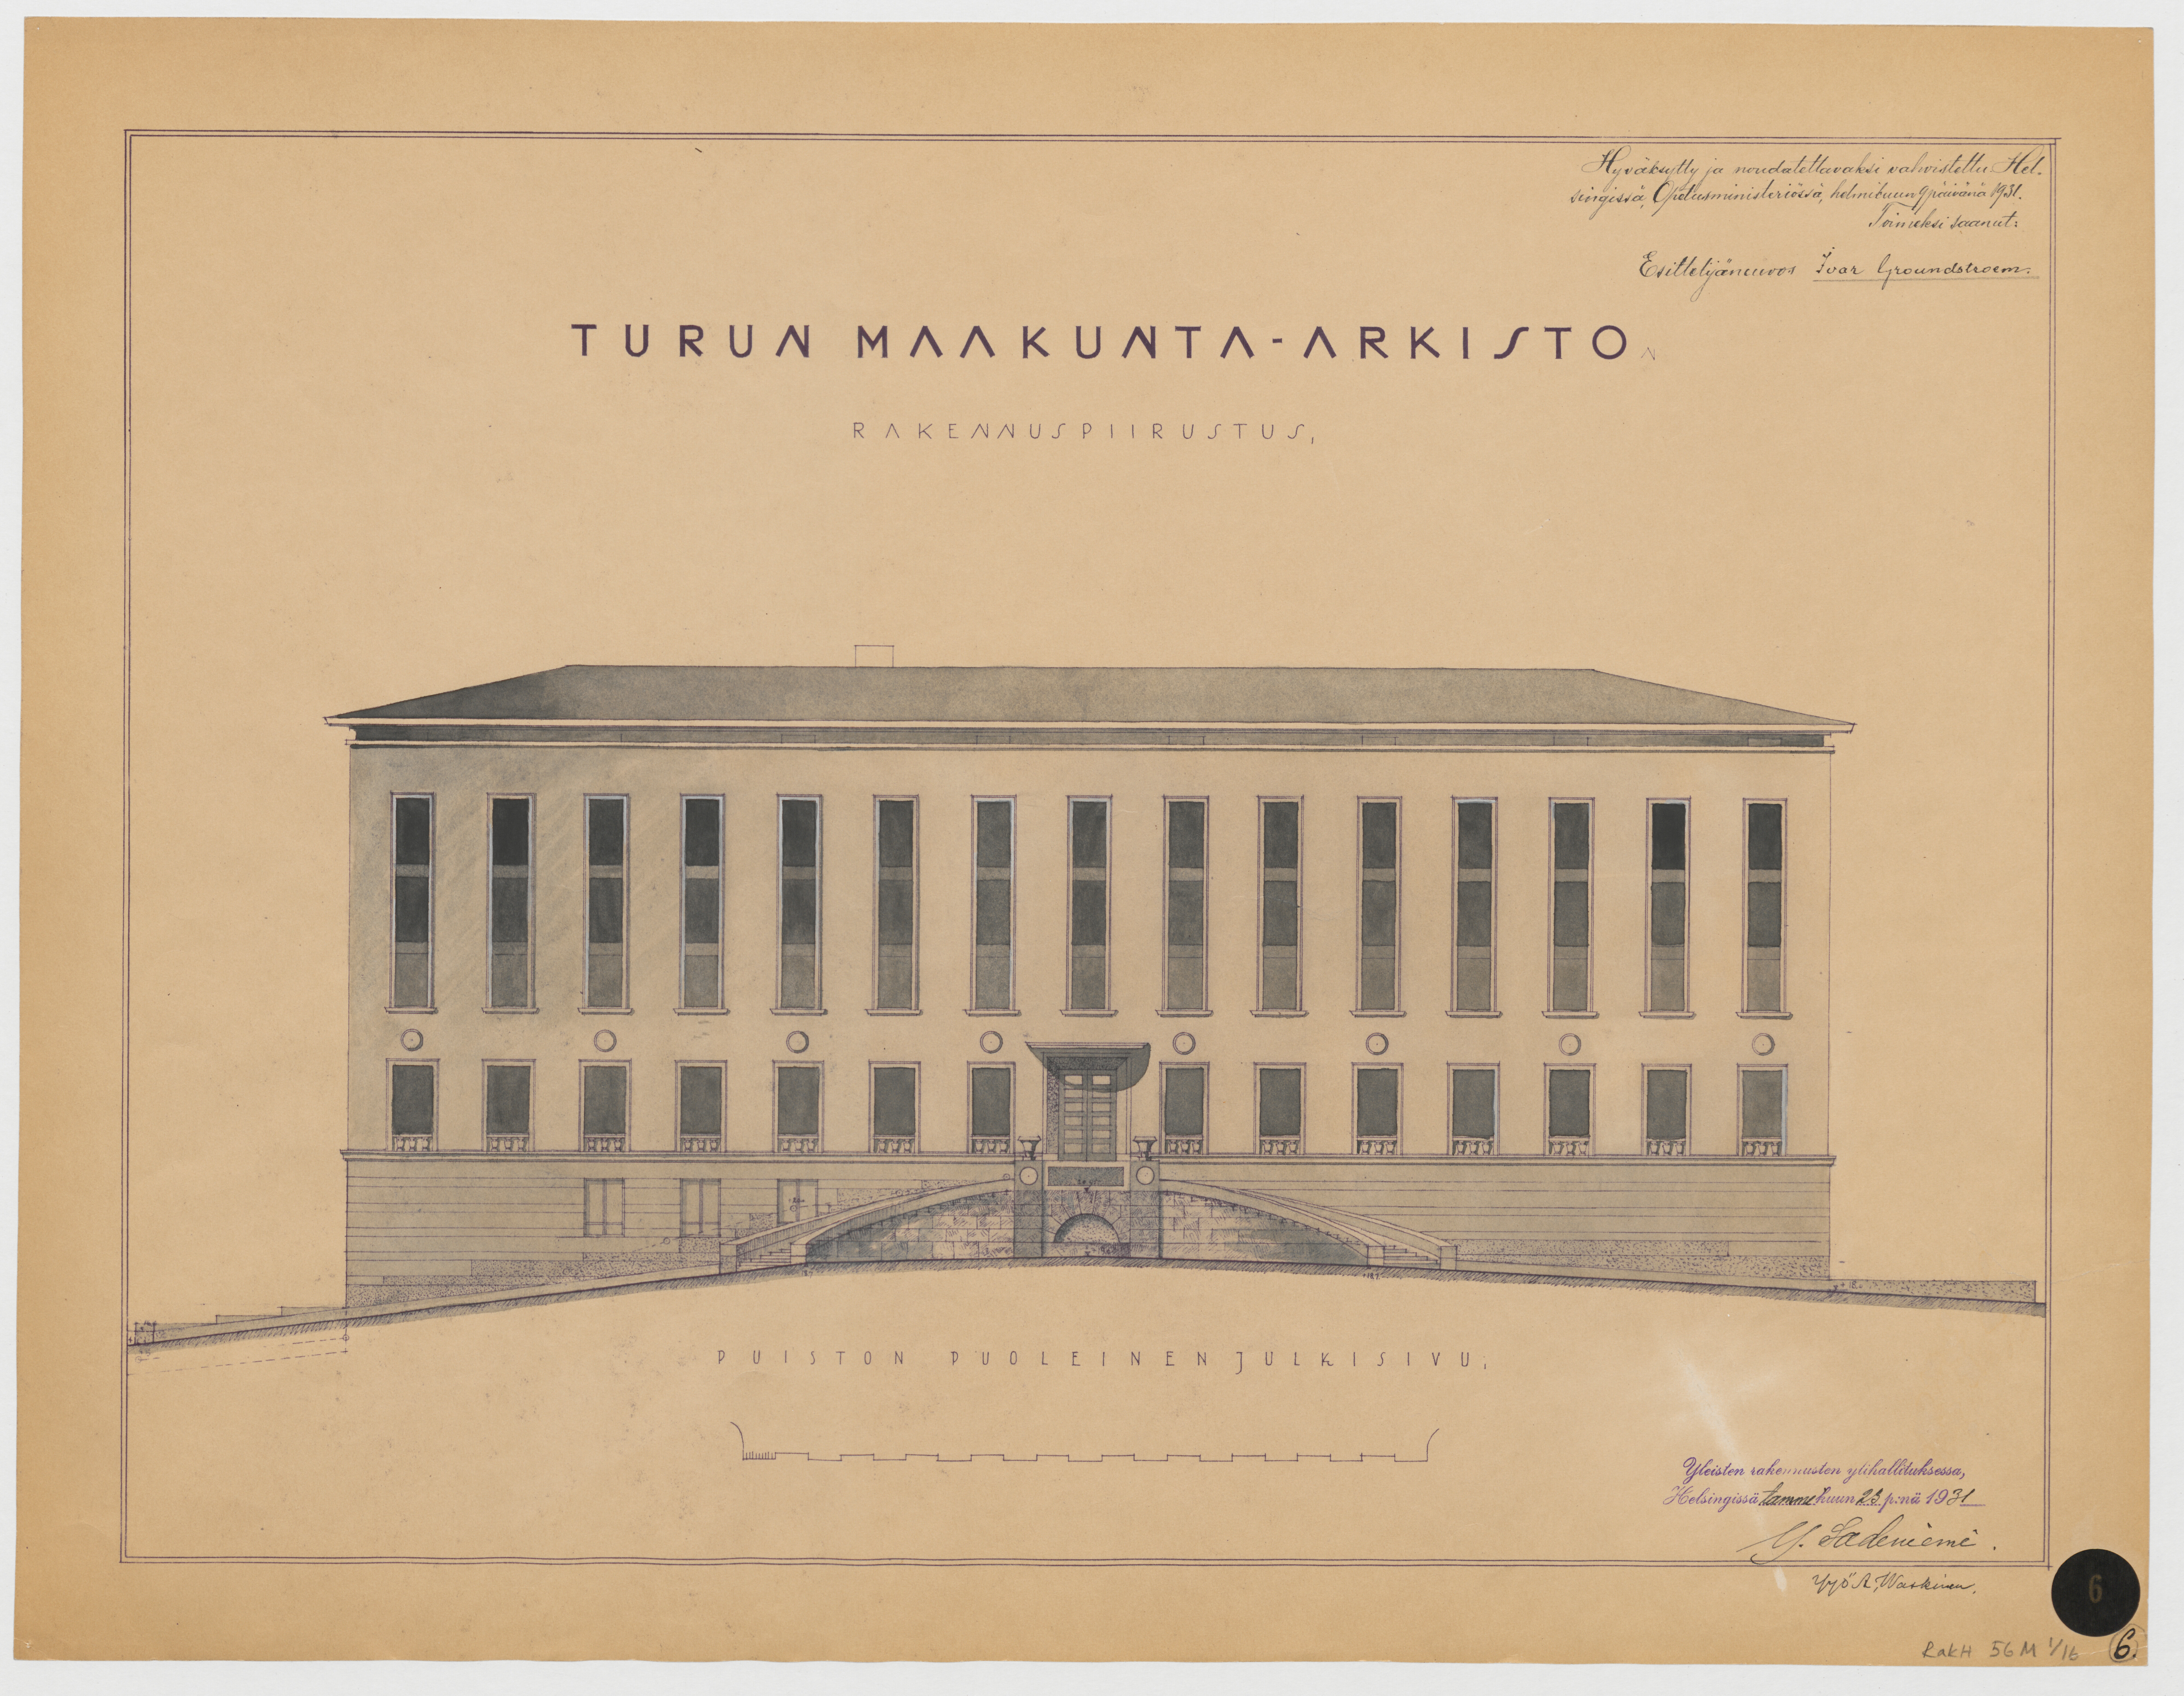 Kuvassa on Turun maakunta-arkiston julkisivua esittävä rakennuspiirustus.